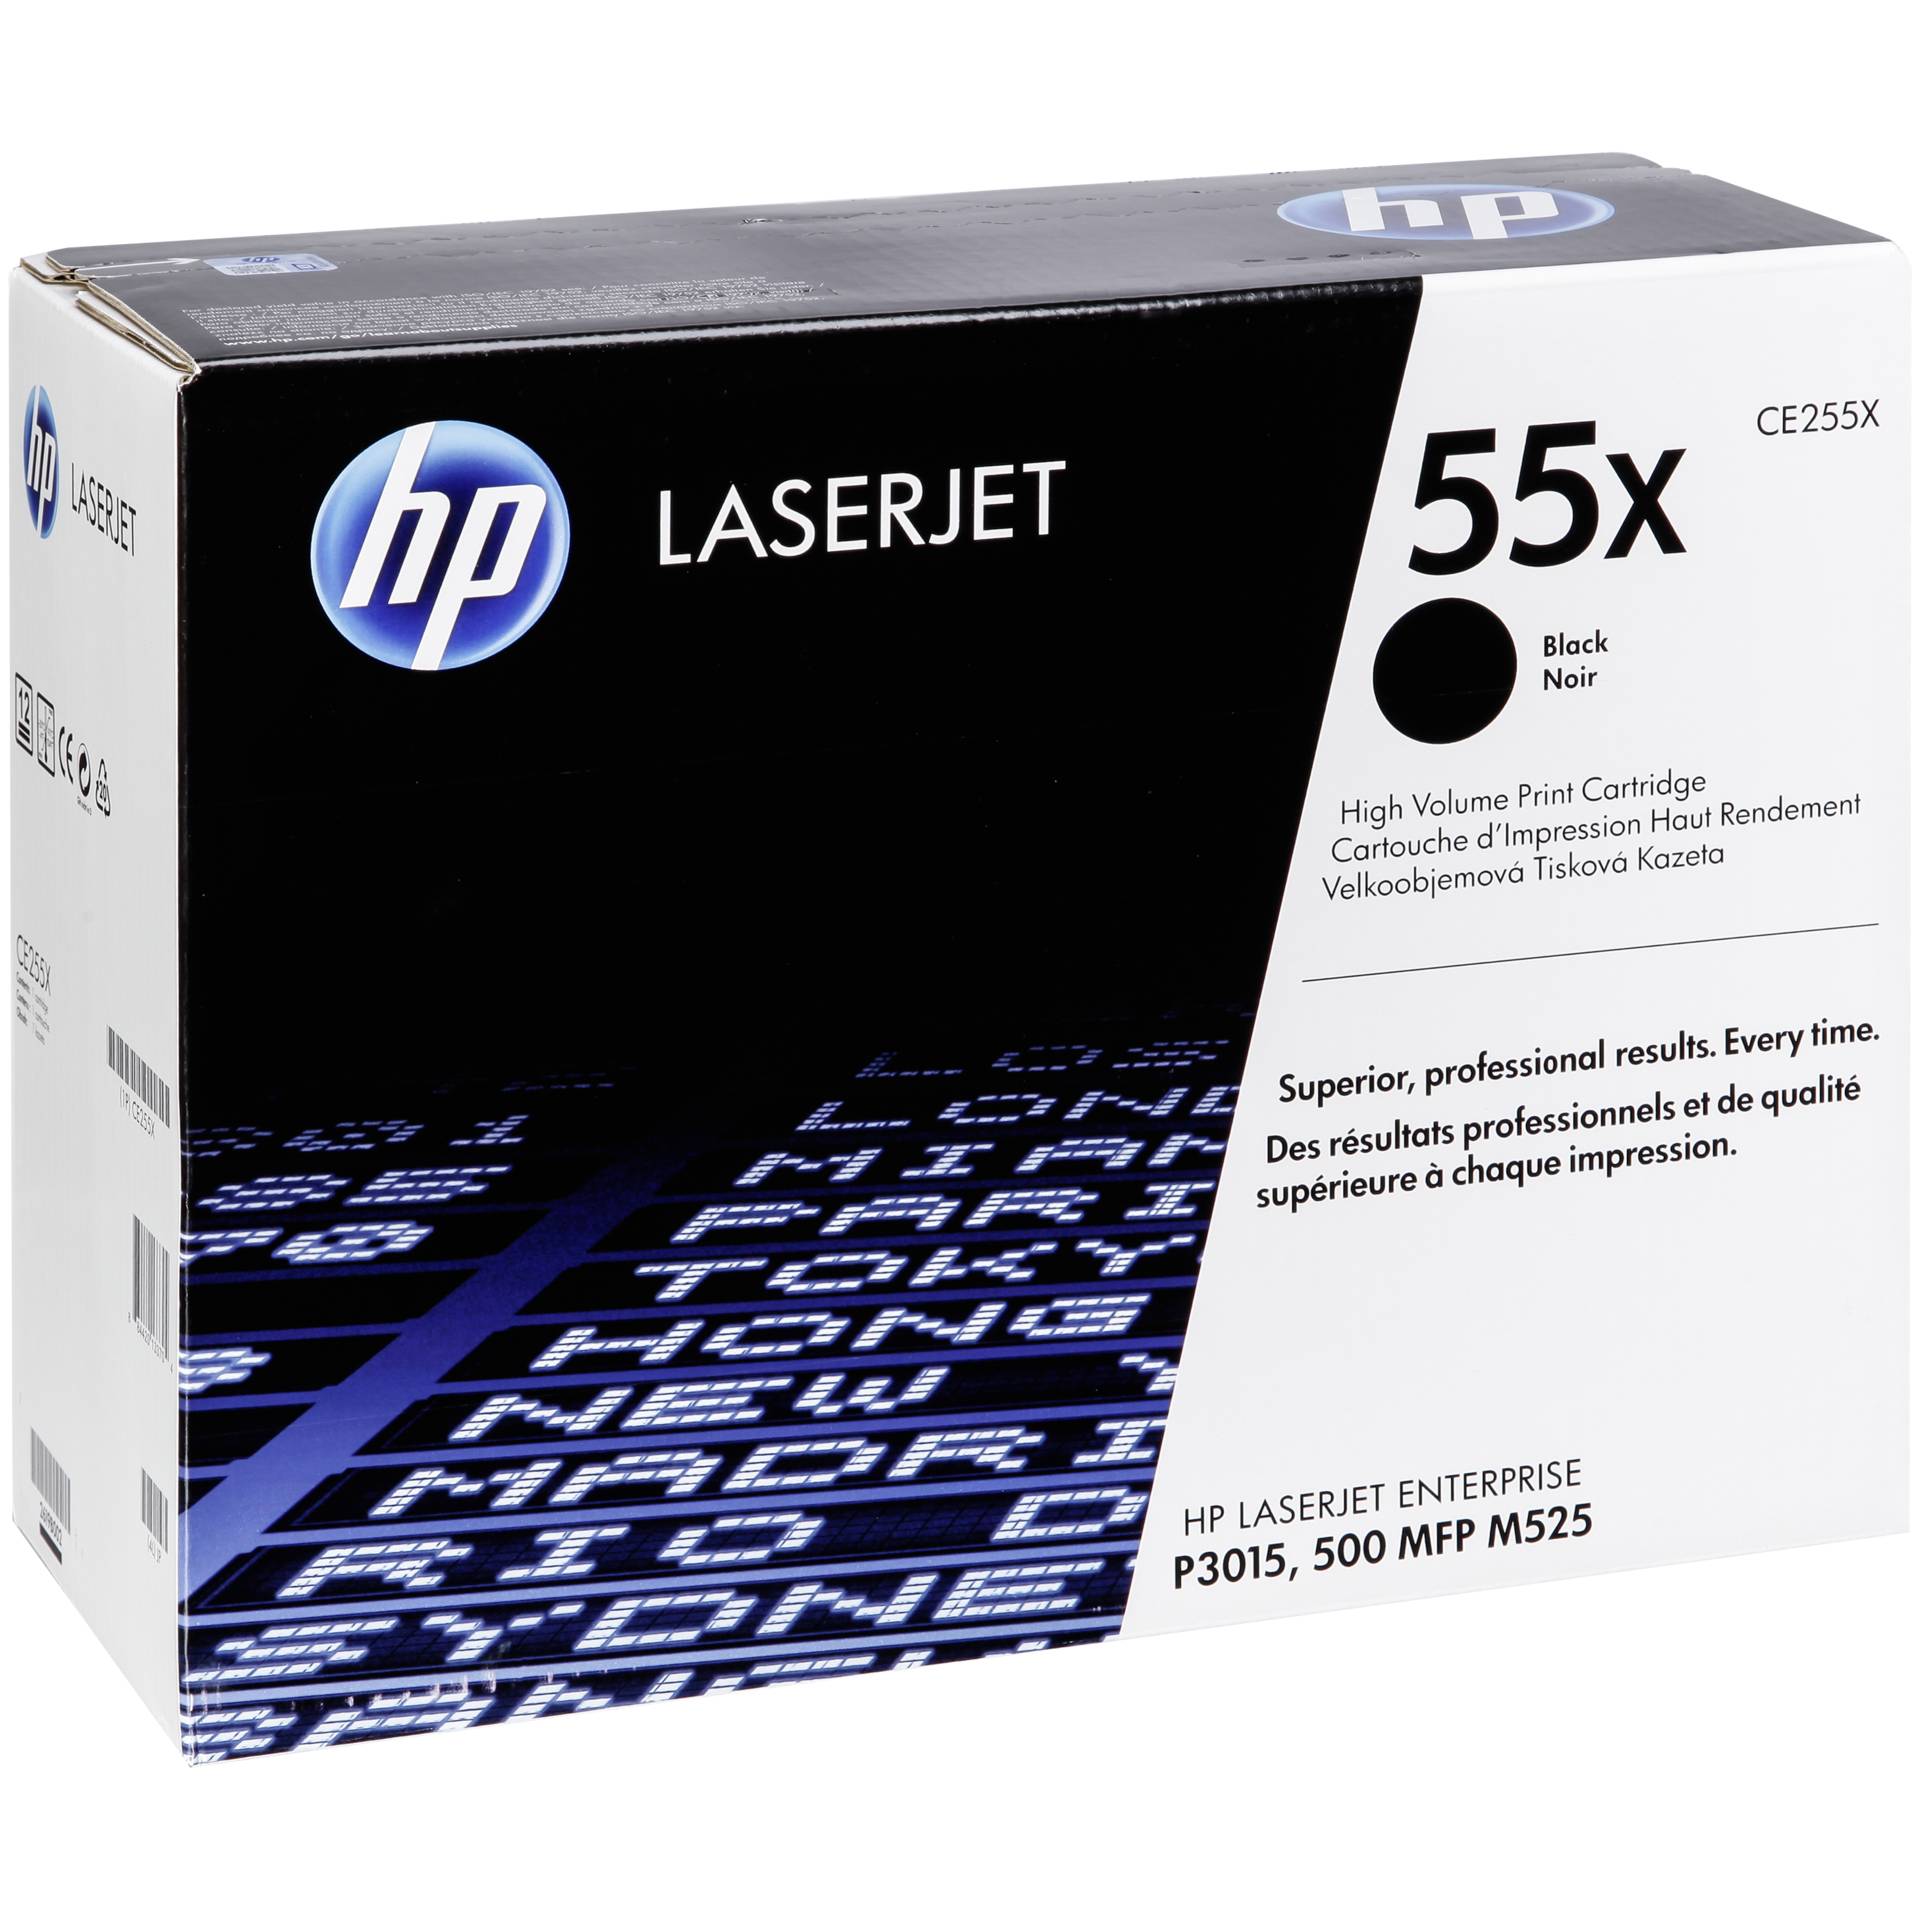 HP Toner 55X schwarz für LaserJet 